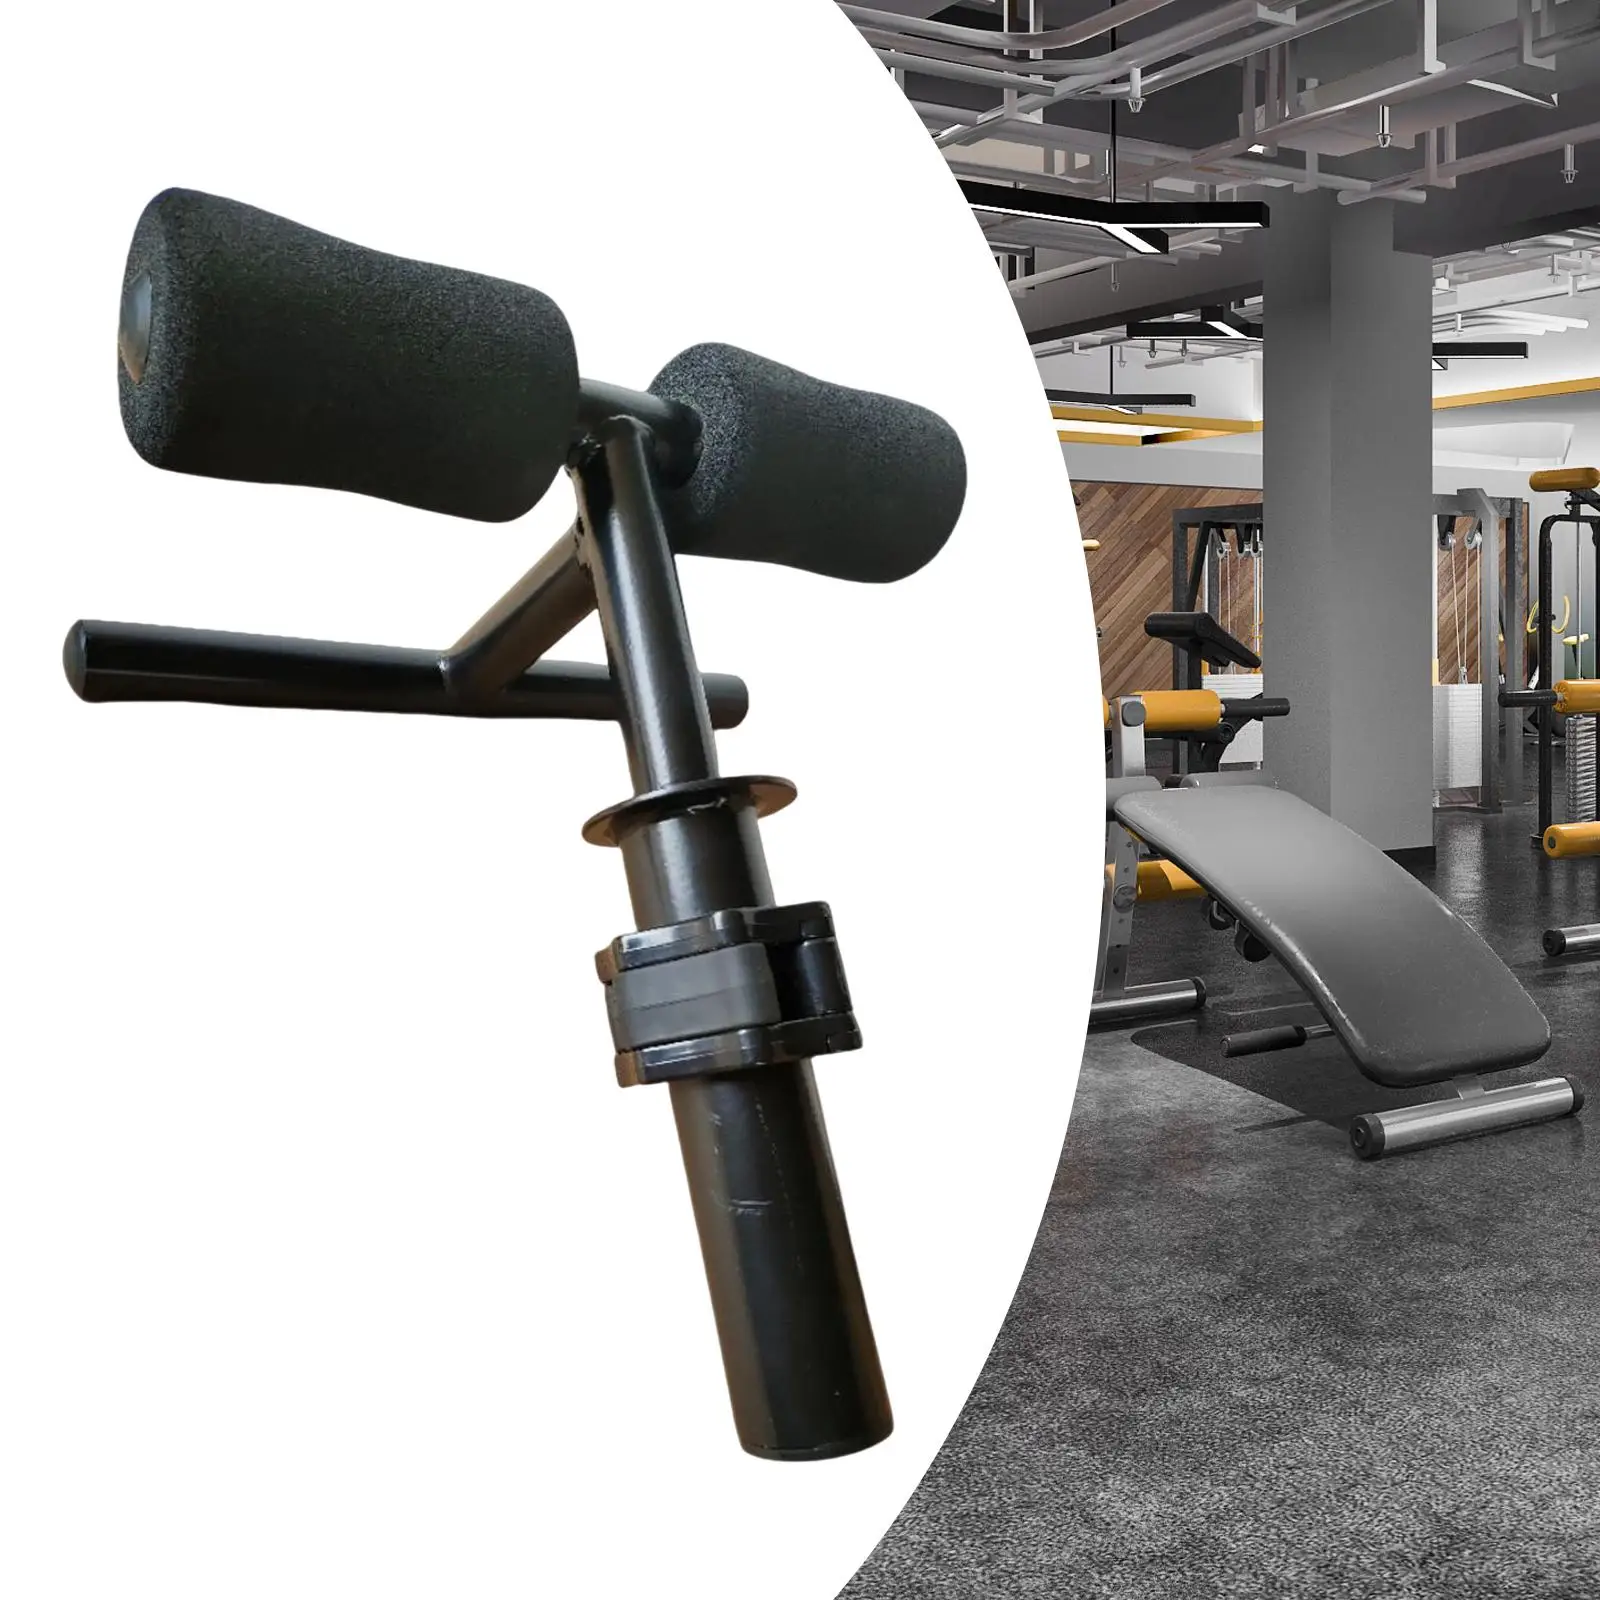 Tibialis Anterior Exercise Equipment Single Leg Strength Trainer Training Machine Training Bar for Running Ski Soccer Gym